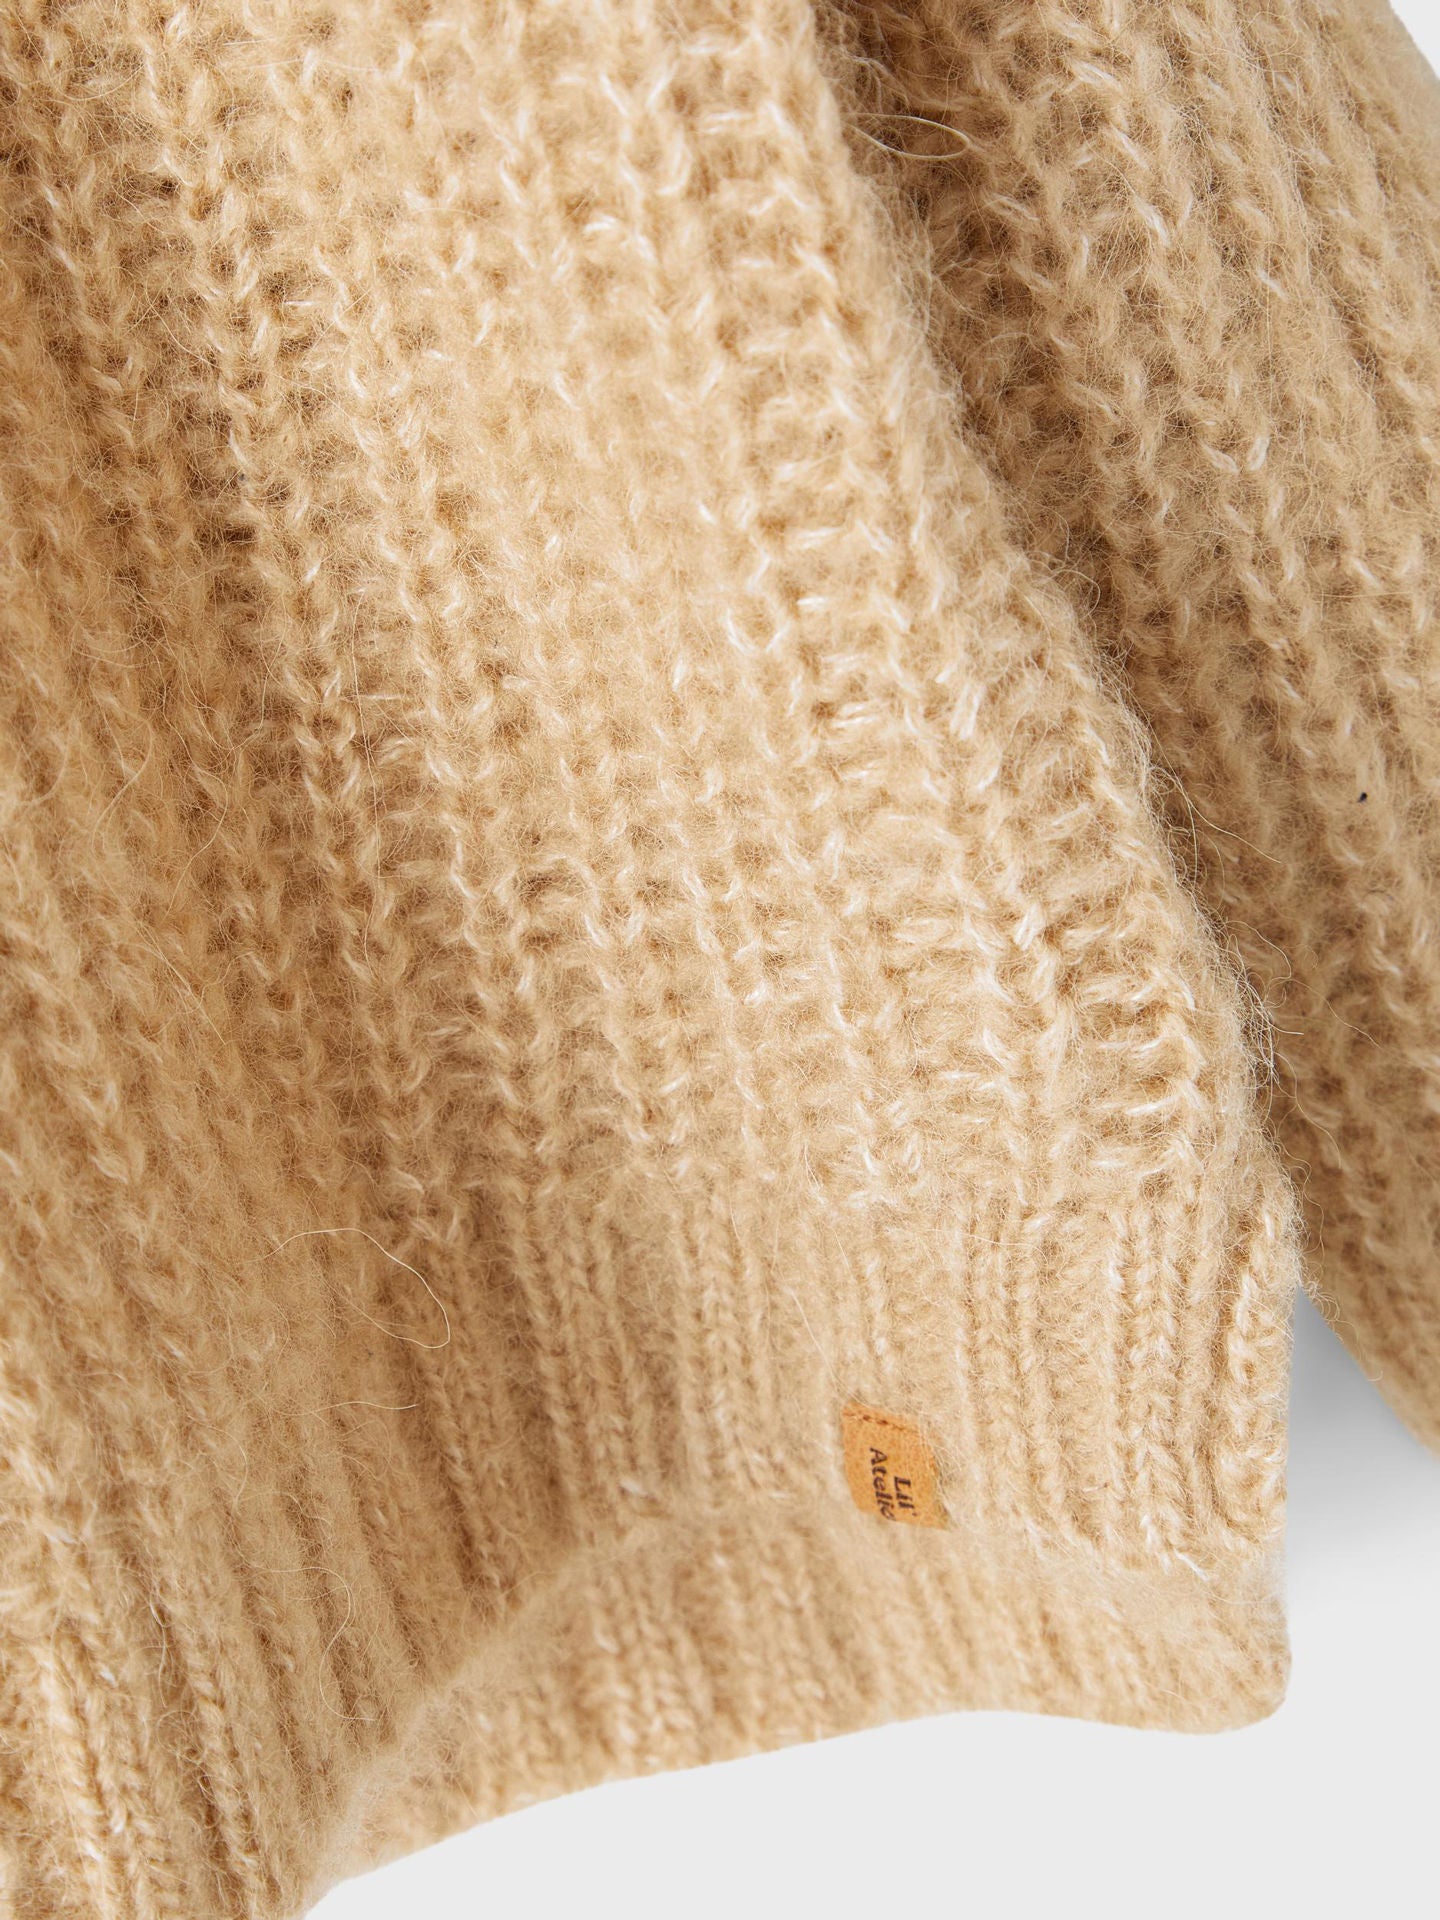 Lil' Atelier Cosy fluffy wool knit jumper